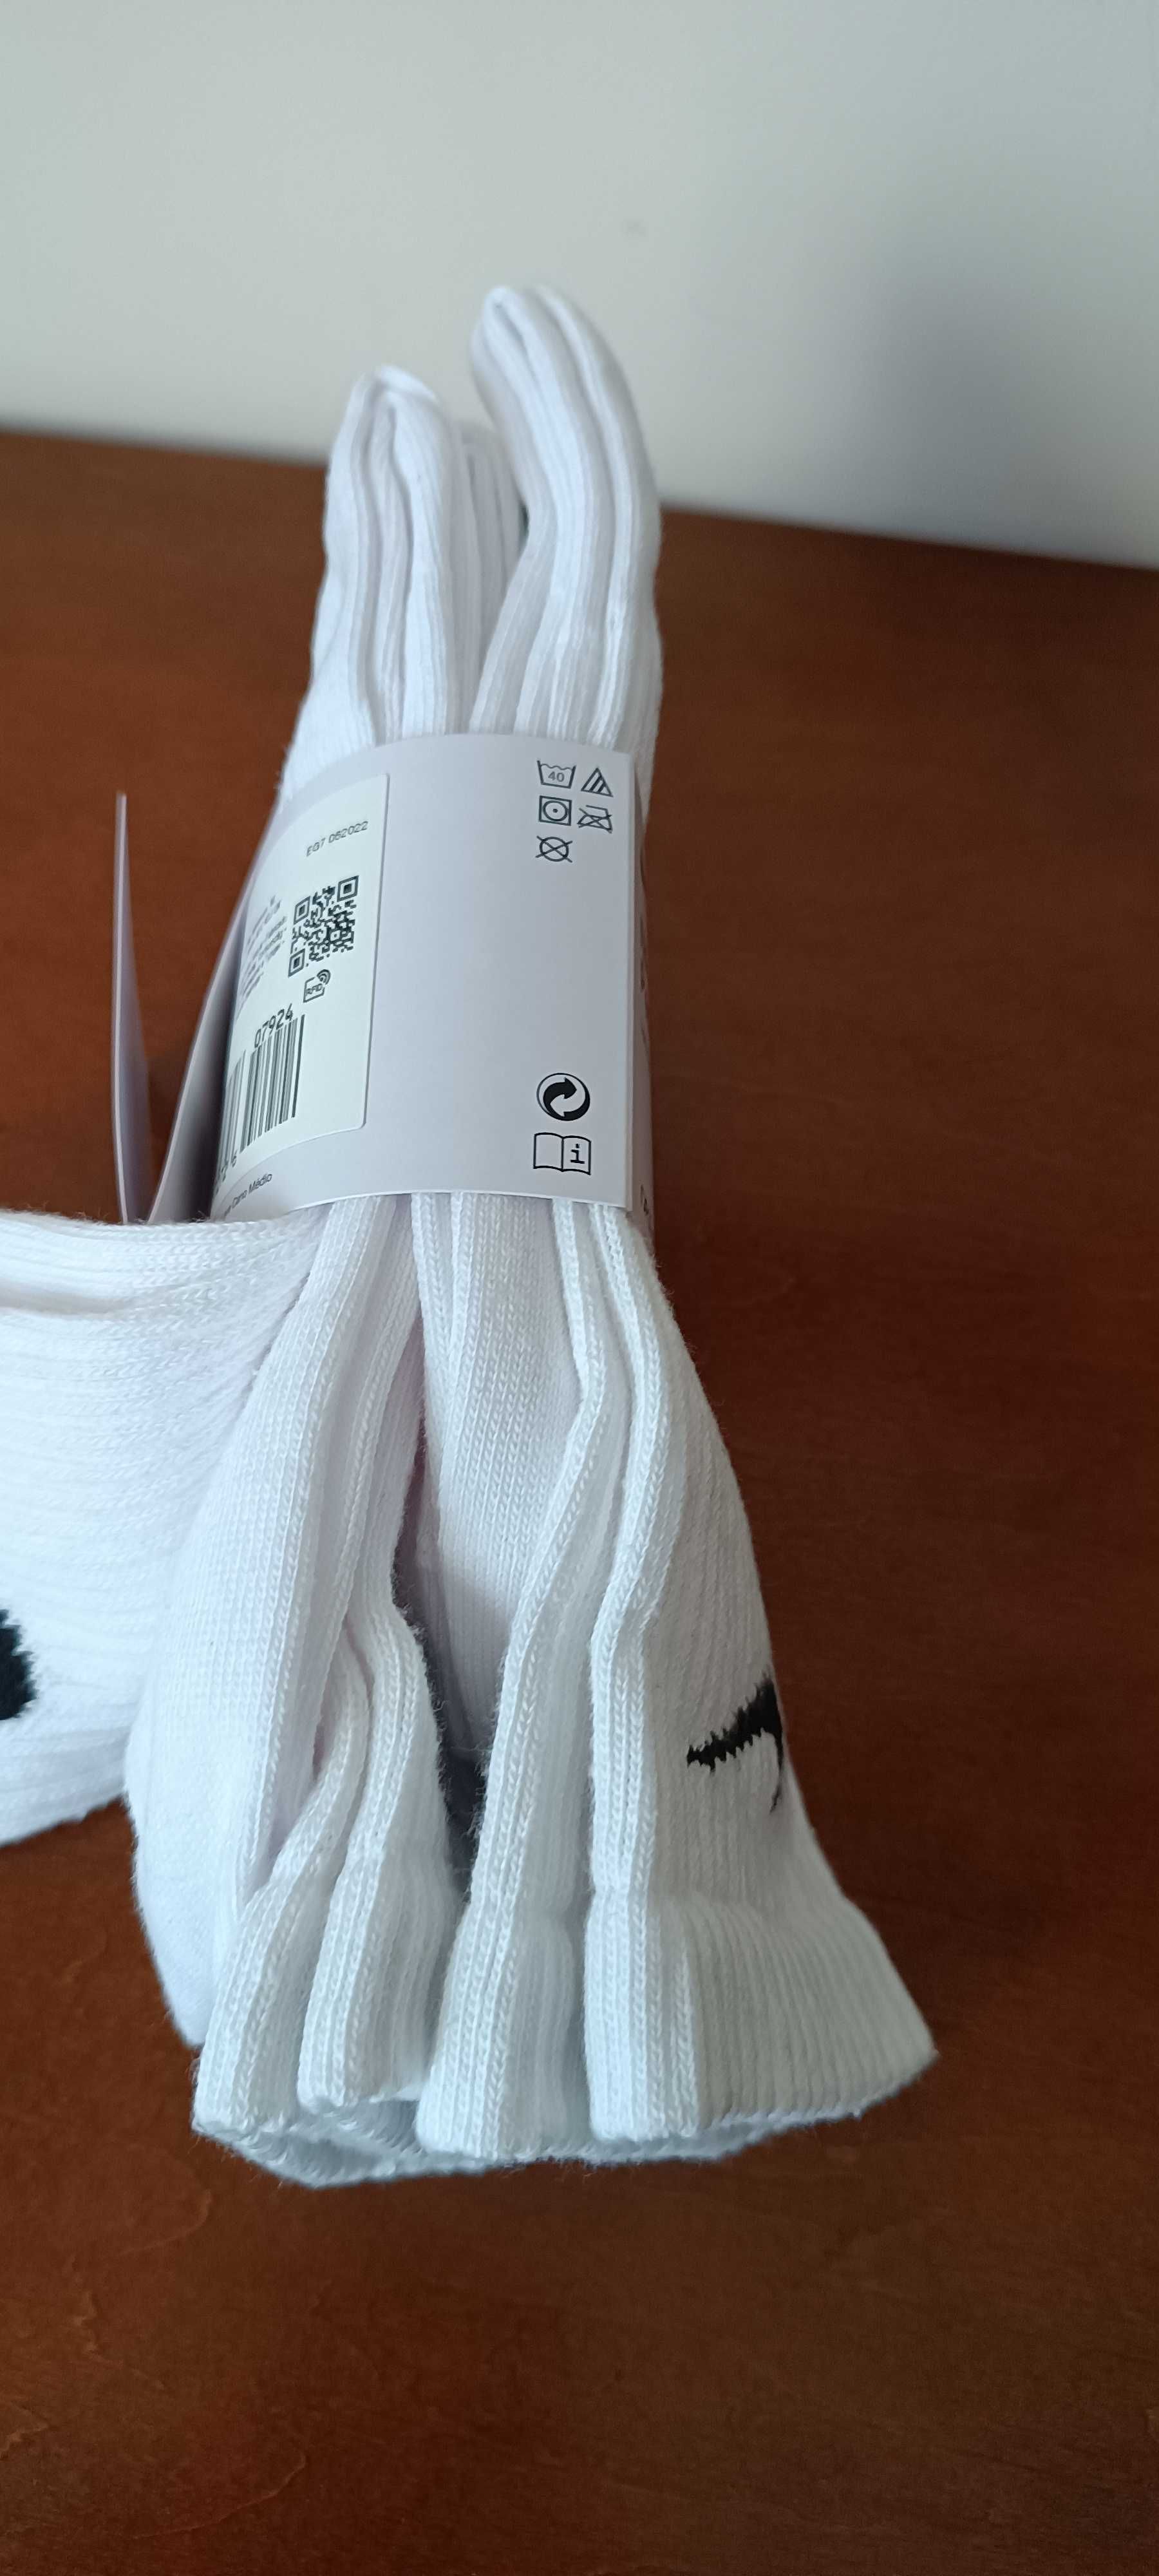 (r Eur 42-46 DUŻE) Nike skarpety wysokie SX4704,-101 białe trójpak